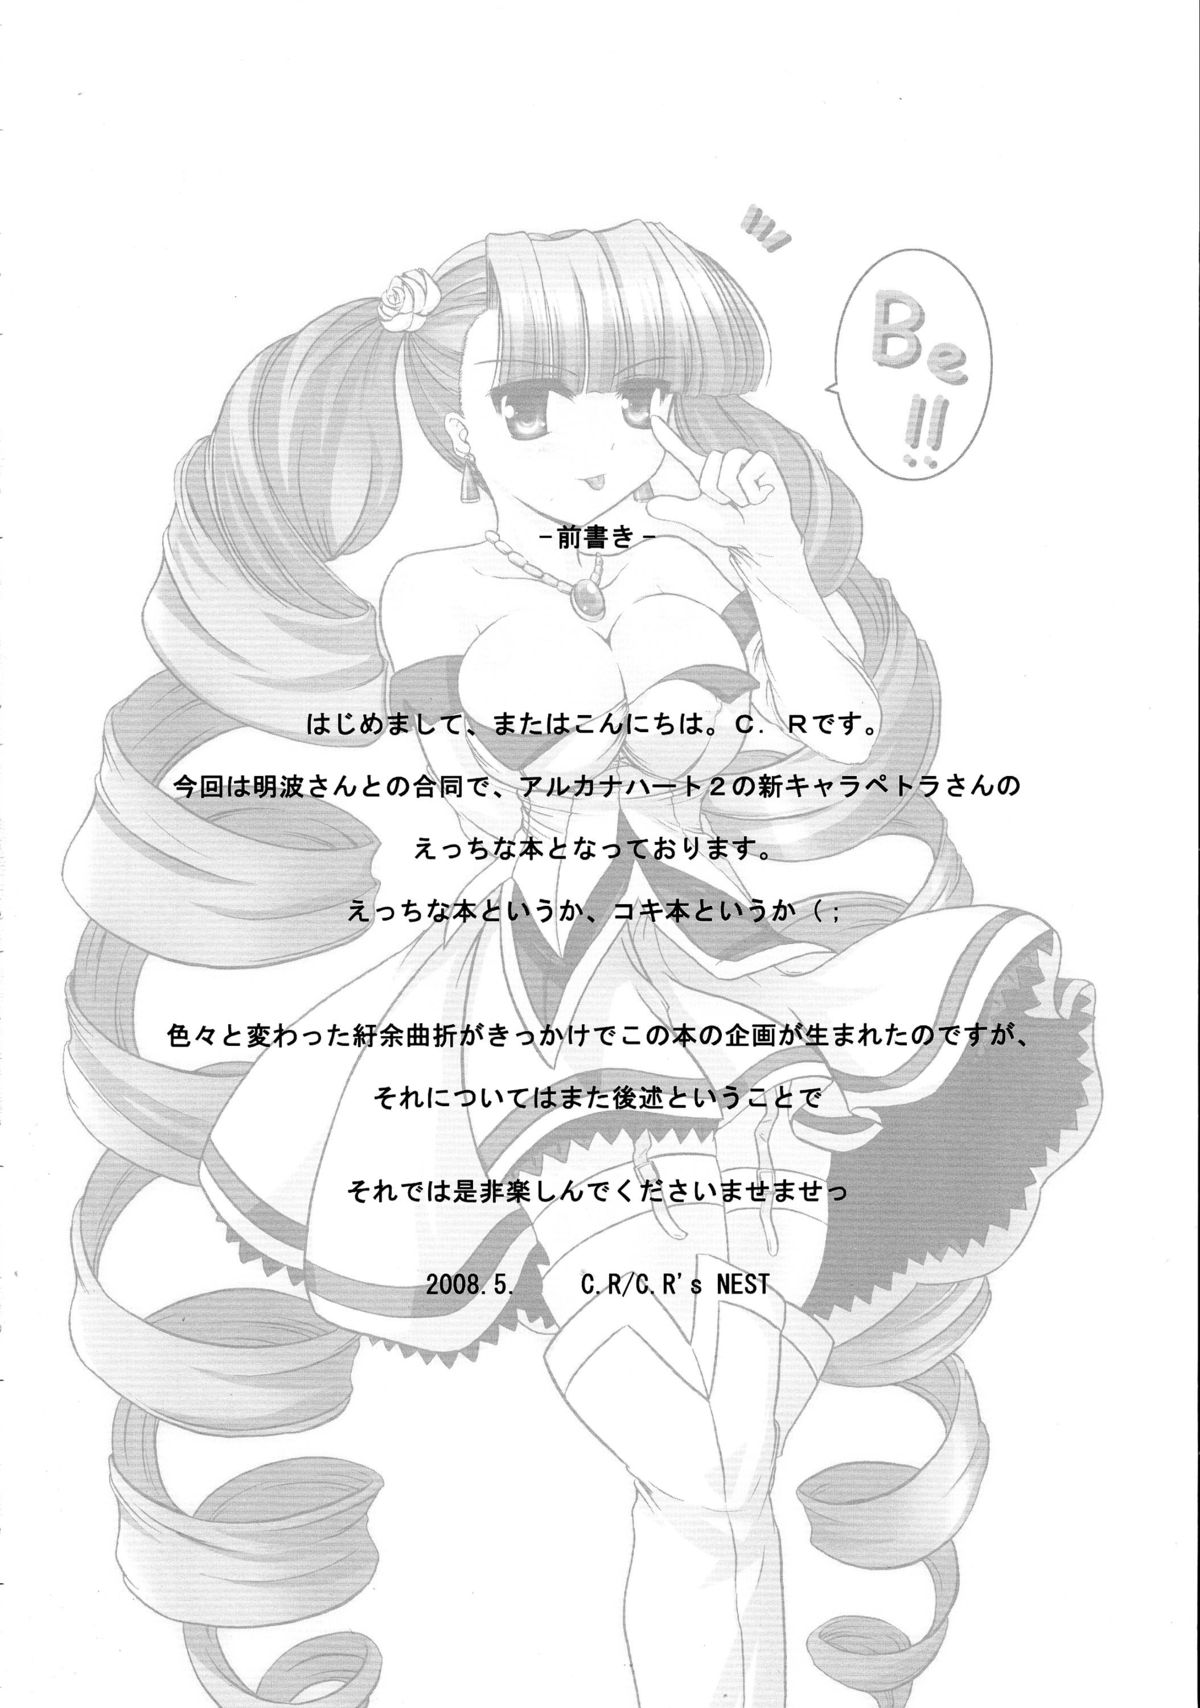 [C.R's NEST (Akenami Yasutaka, C.R, Chouzetsu Yarou)] Bokura wa Kanojo no te no Naka (Arcana Heart) page 4 full